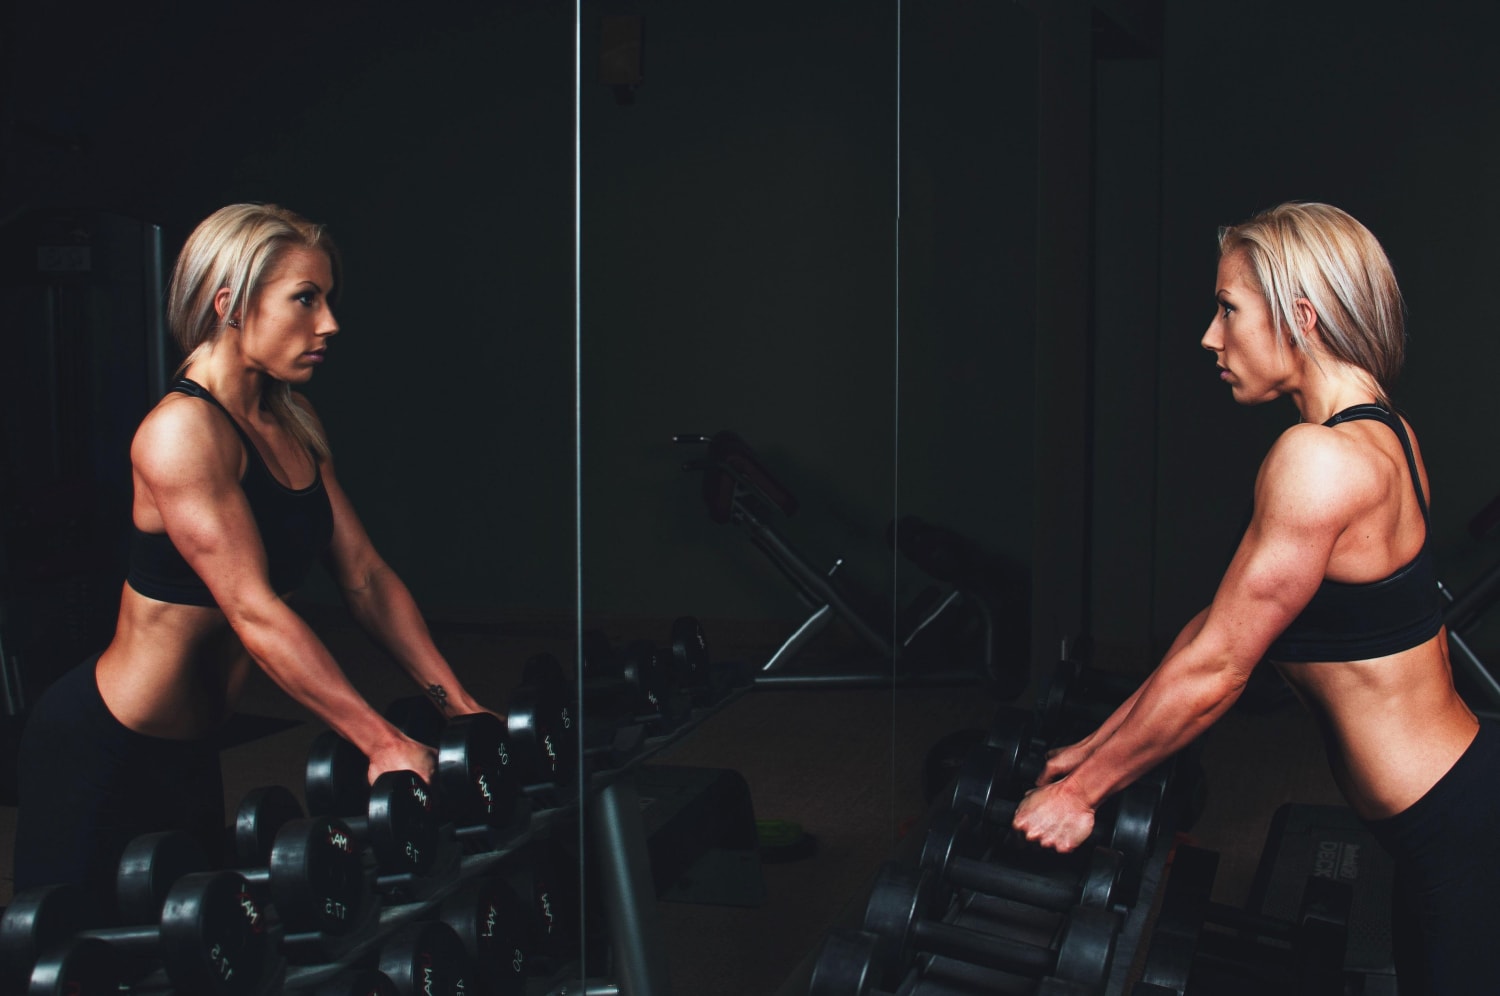 Los cuatro ejercicios básicos que no te pueden faltar en el gym